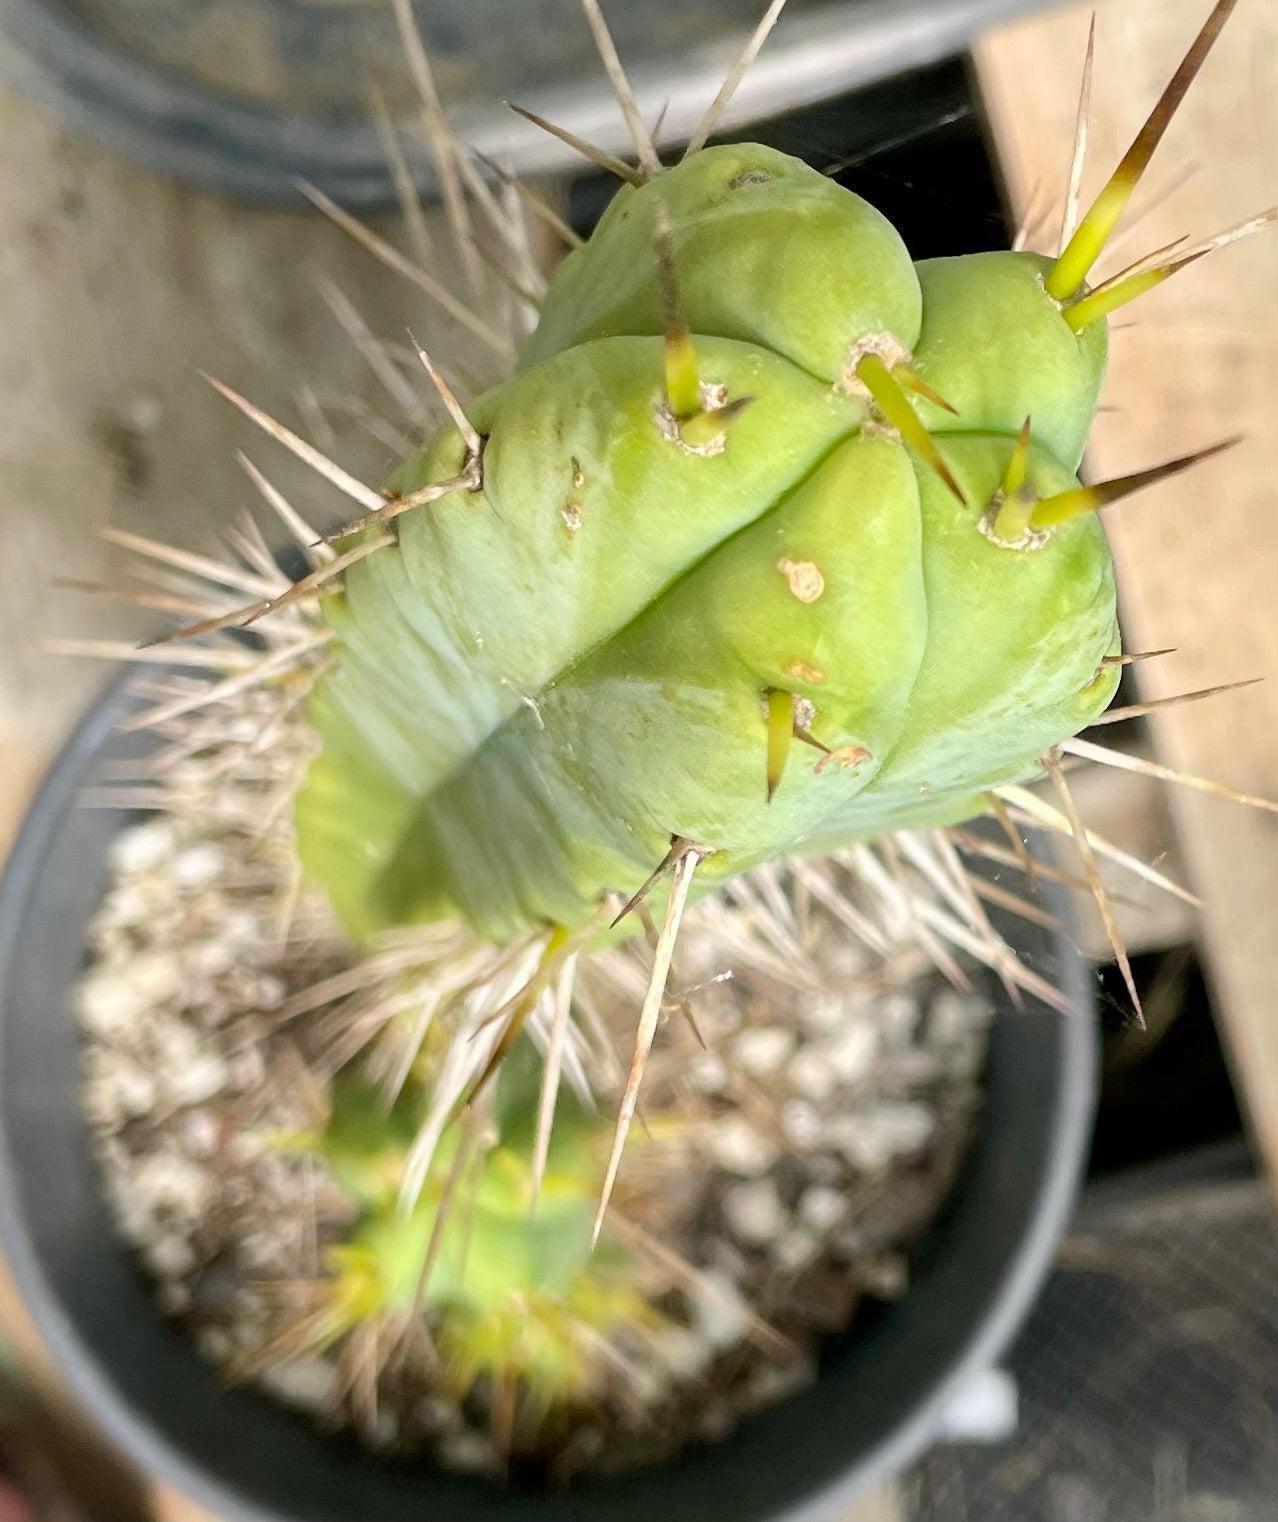 #EC317 EXACT Trichocereus Hybrid KGC X Wowie Cactus-Cactus - Large - Exact-The Succulent Source